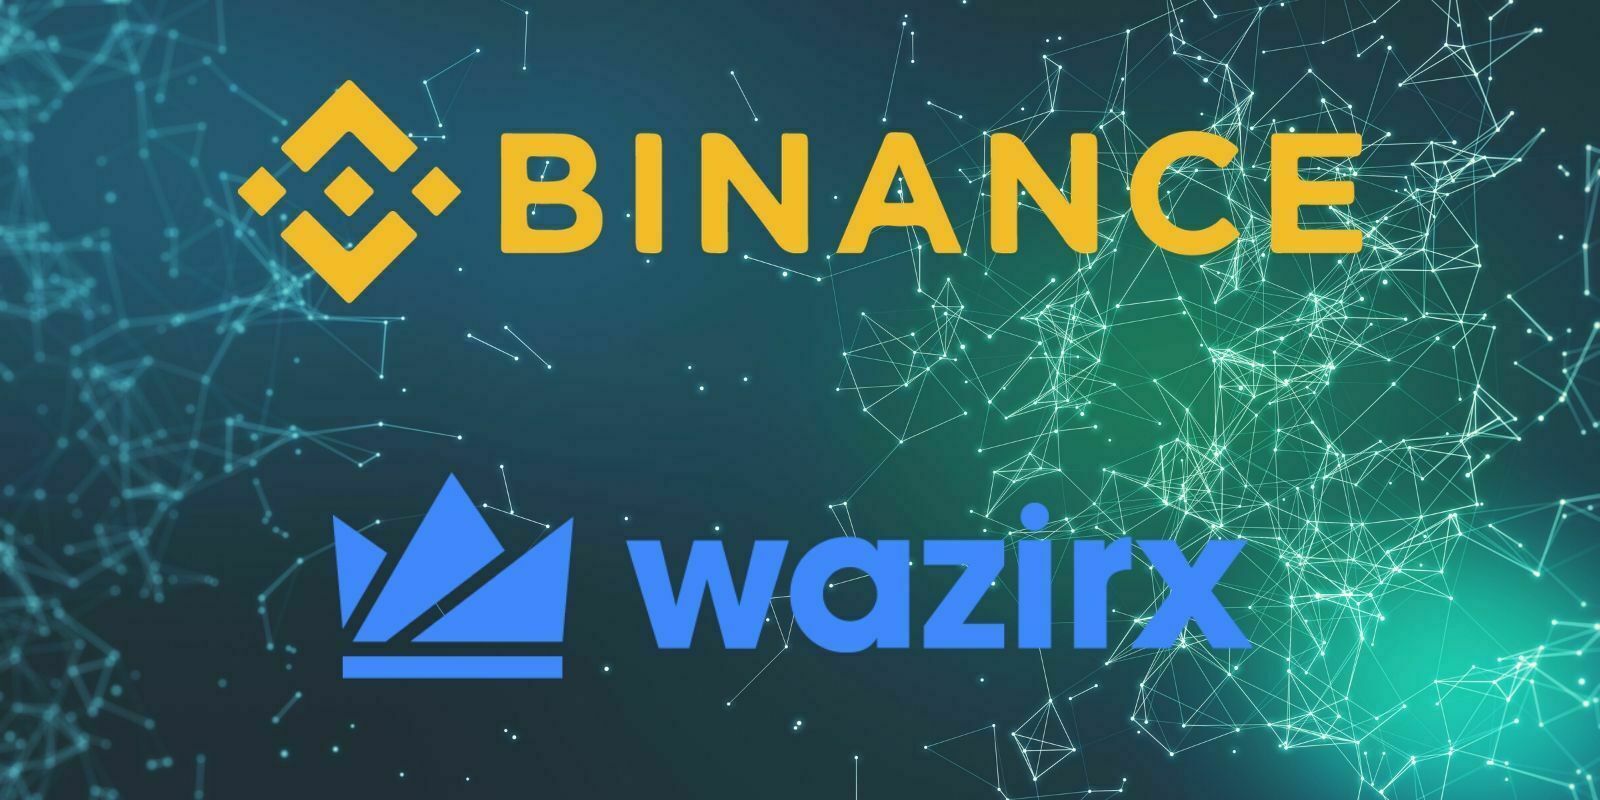 Binance fait l'acquisition de Wazirx, un exchange indien majeur